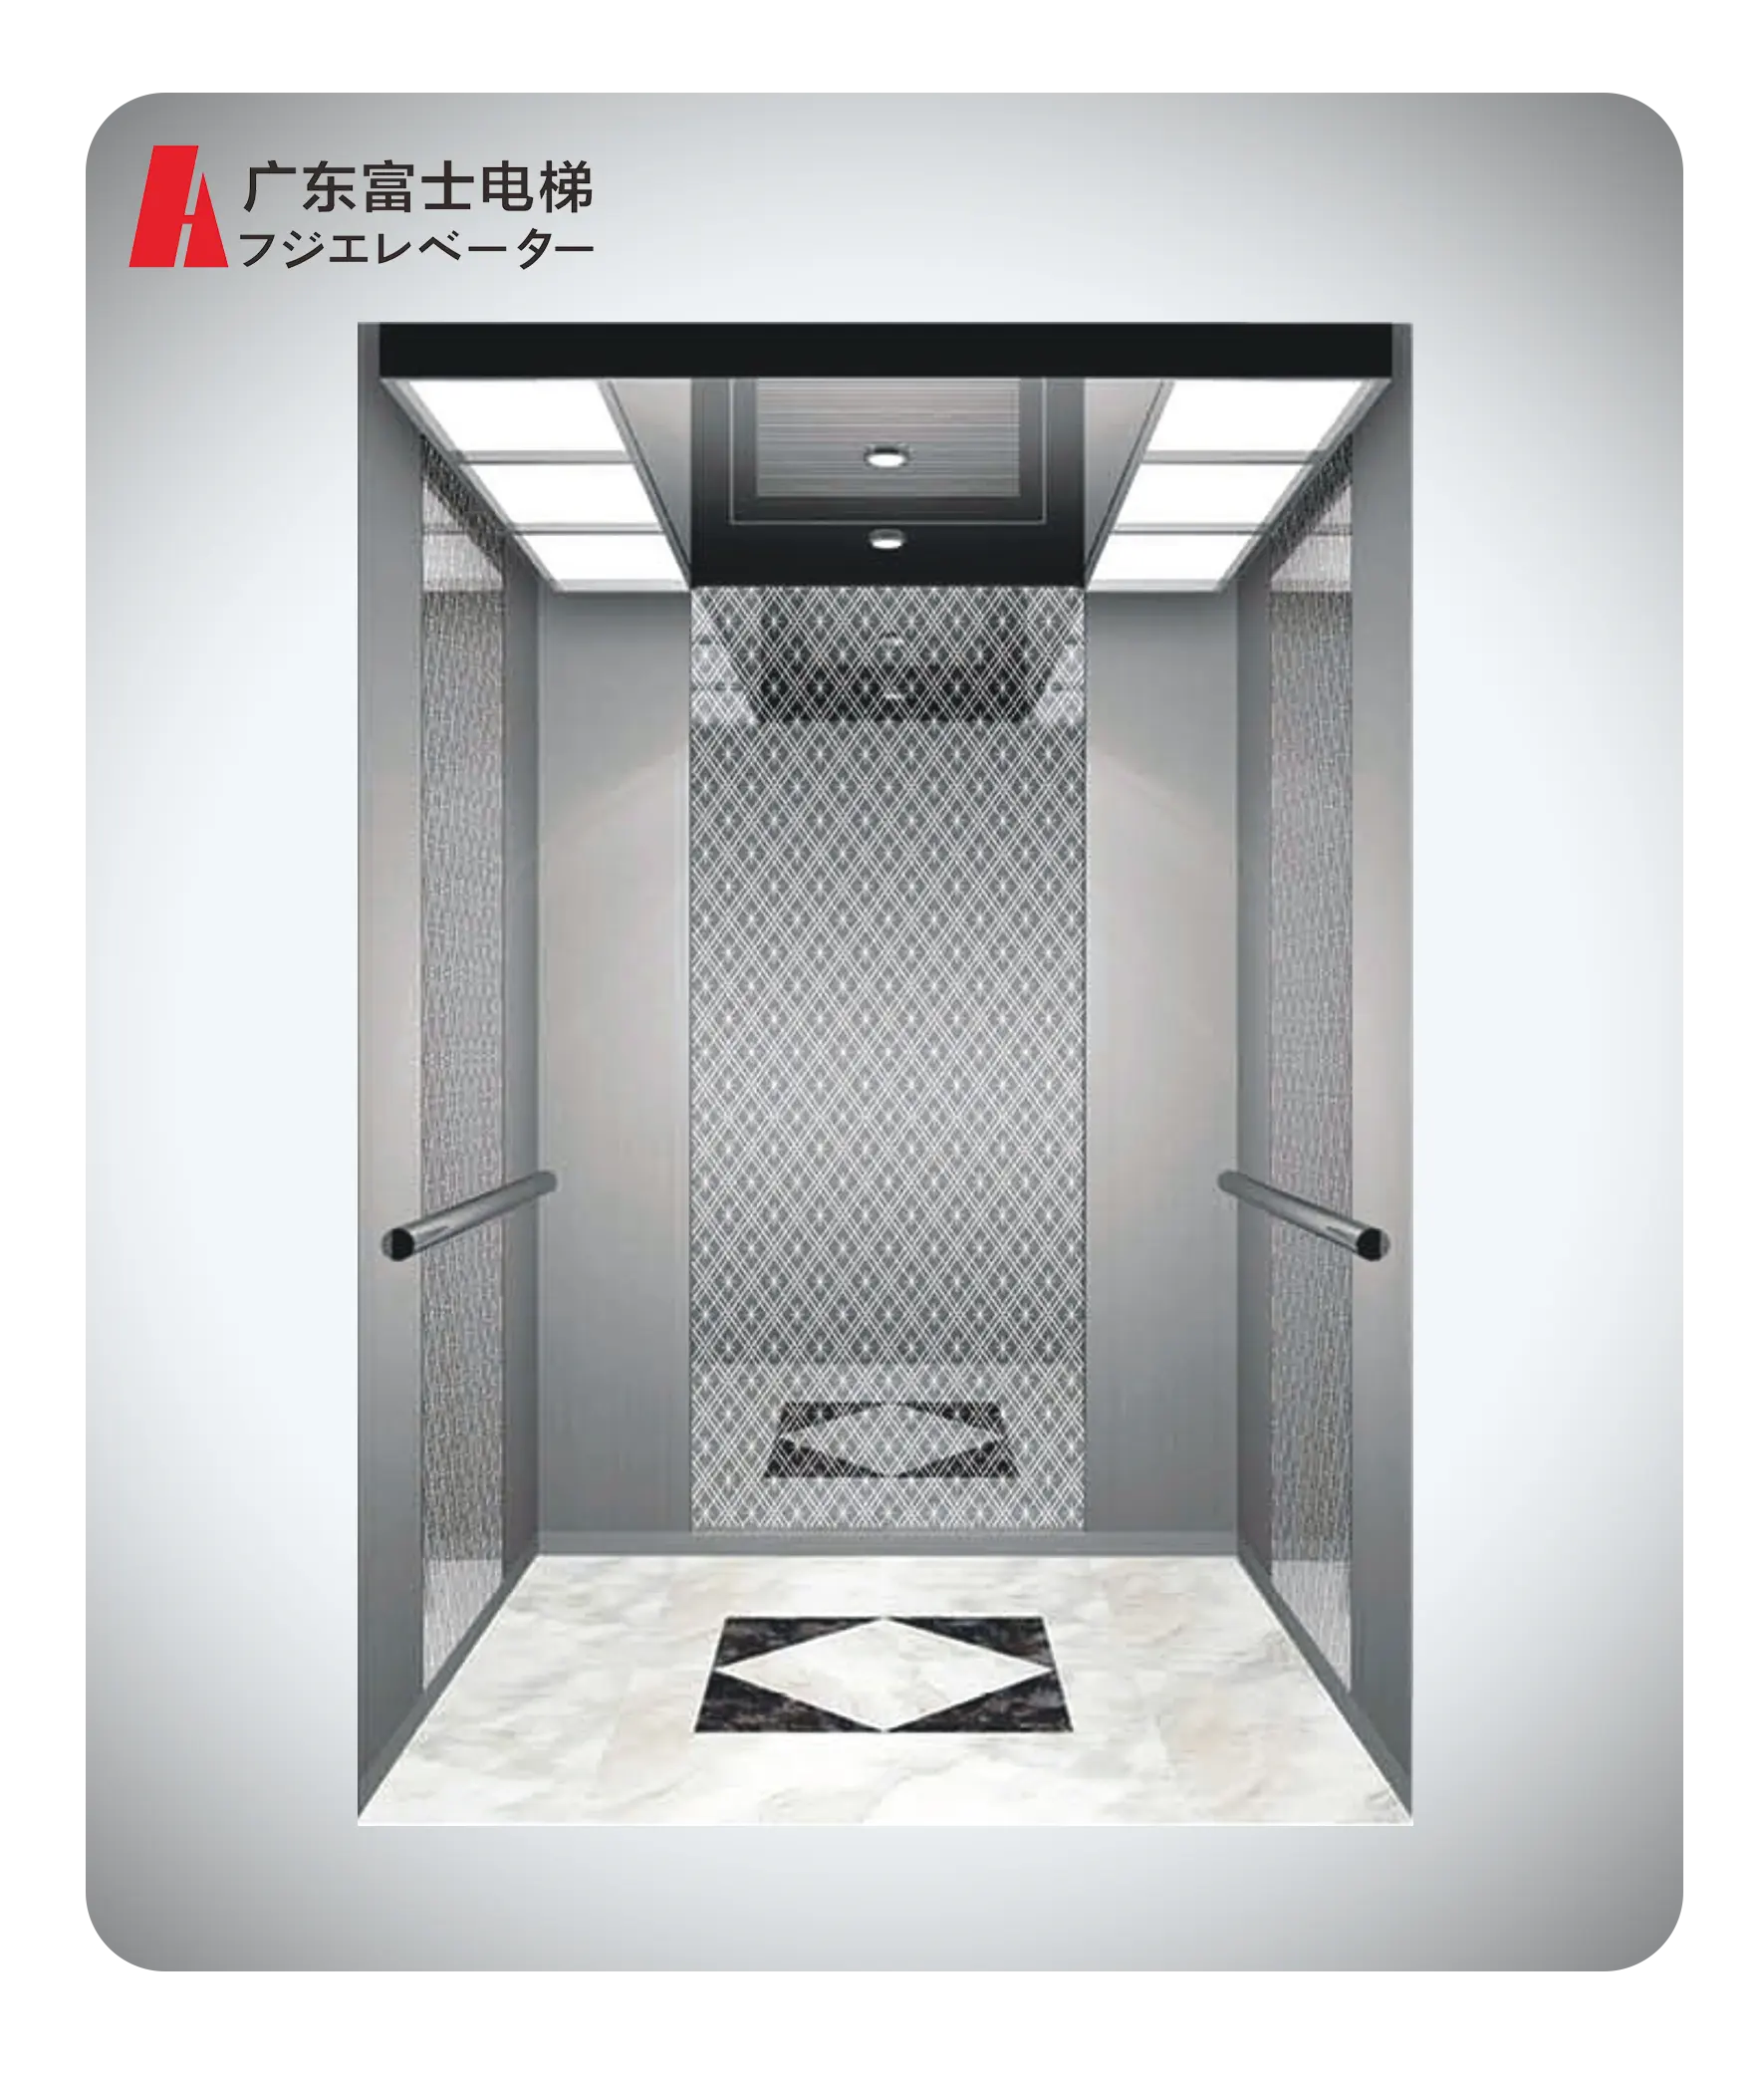 ขายด่วน ลิฟต์โดยสาร ลิฟต์ 10 คน ลิฟต์โดยสาร 800Kg ลิฟต์ ลิฟต์อาคาร ลิฟต์